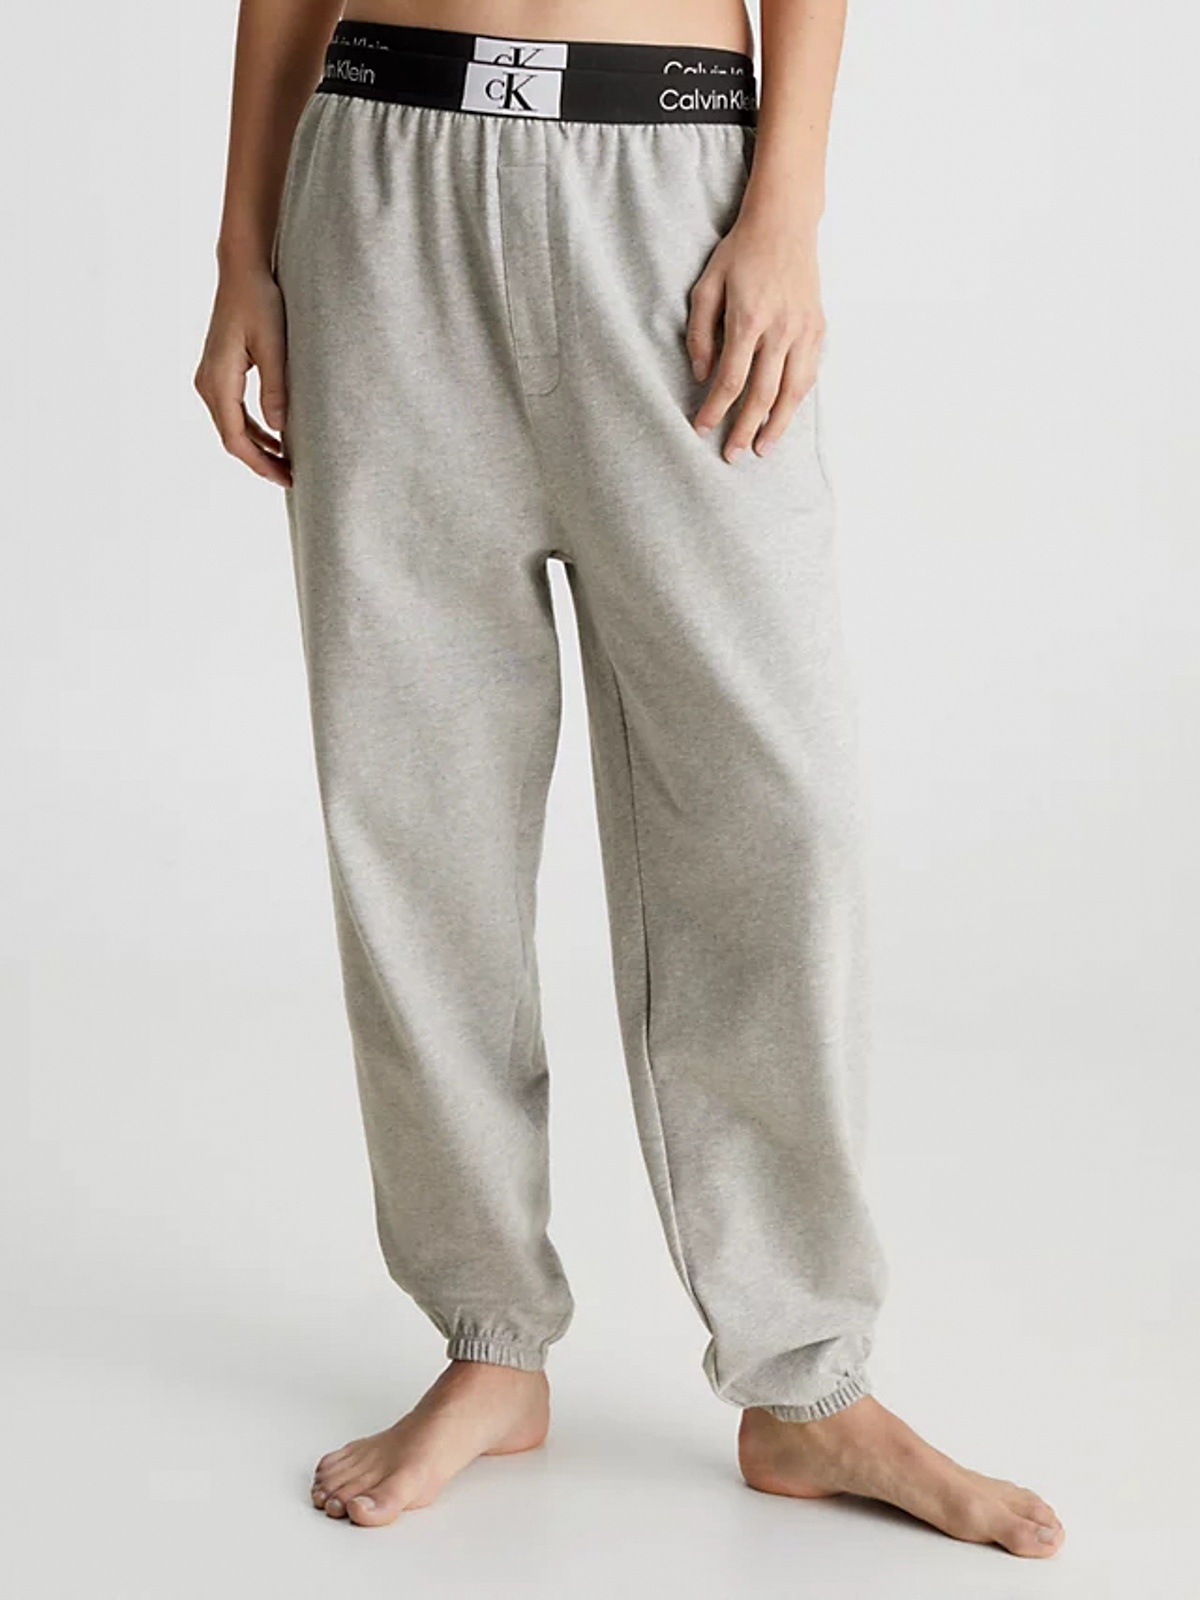 Какие женские пижамные брюки купить в интернет-магазине hunkemoller.by?